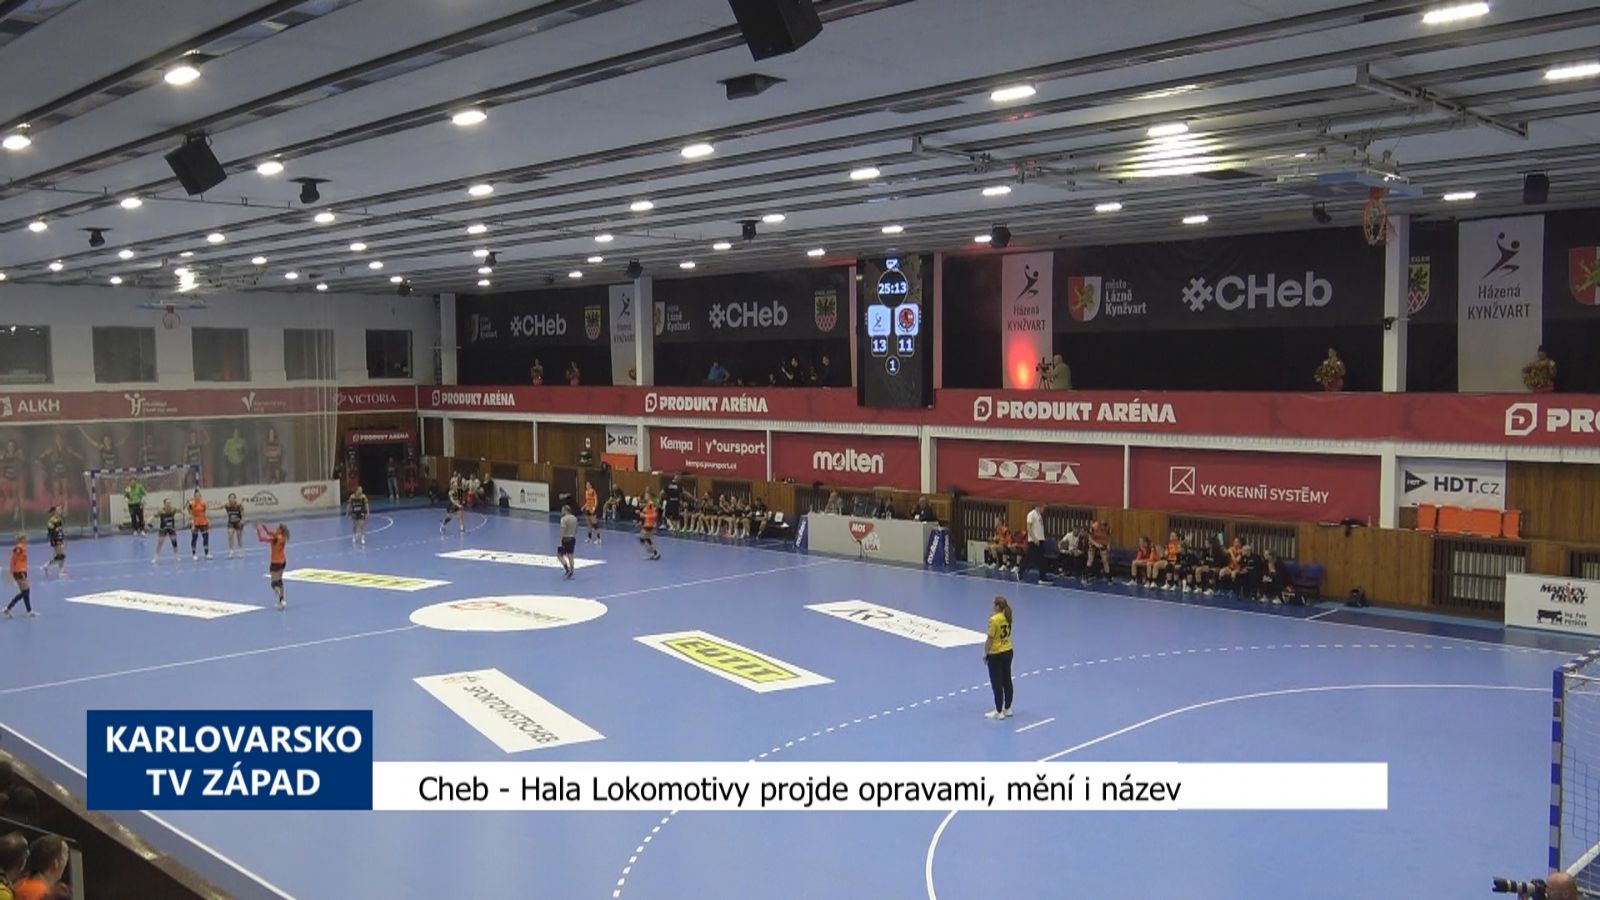 Cheb: Hala Lokomotivy projde opravami, mění i název (TV Západ)